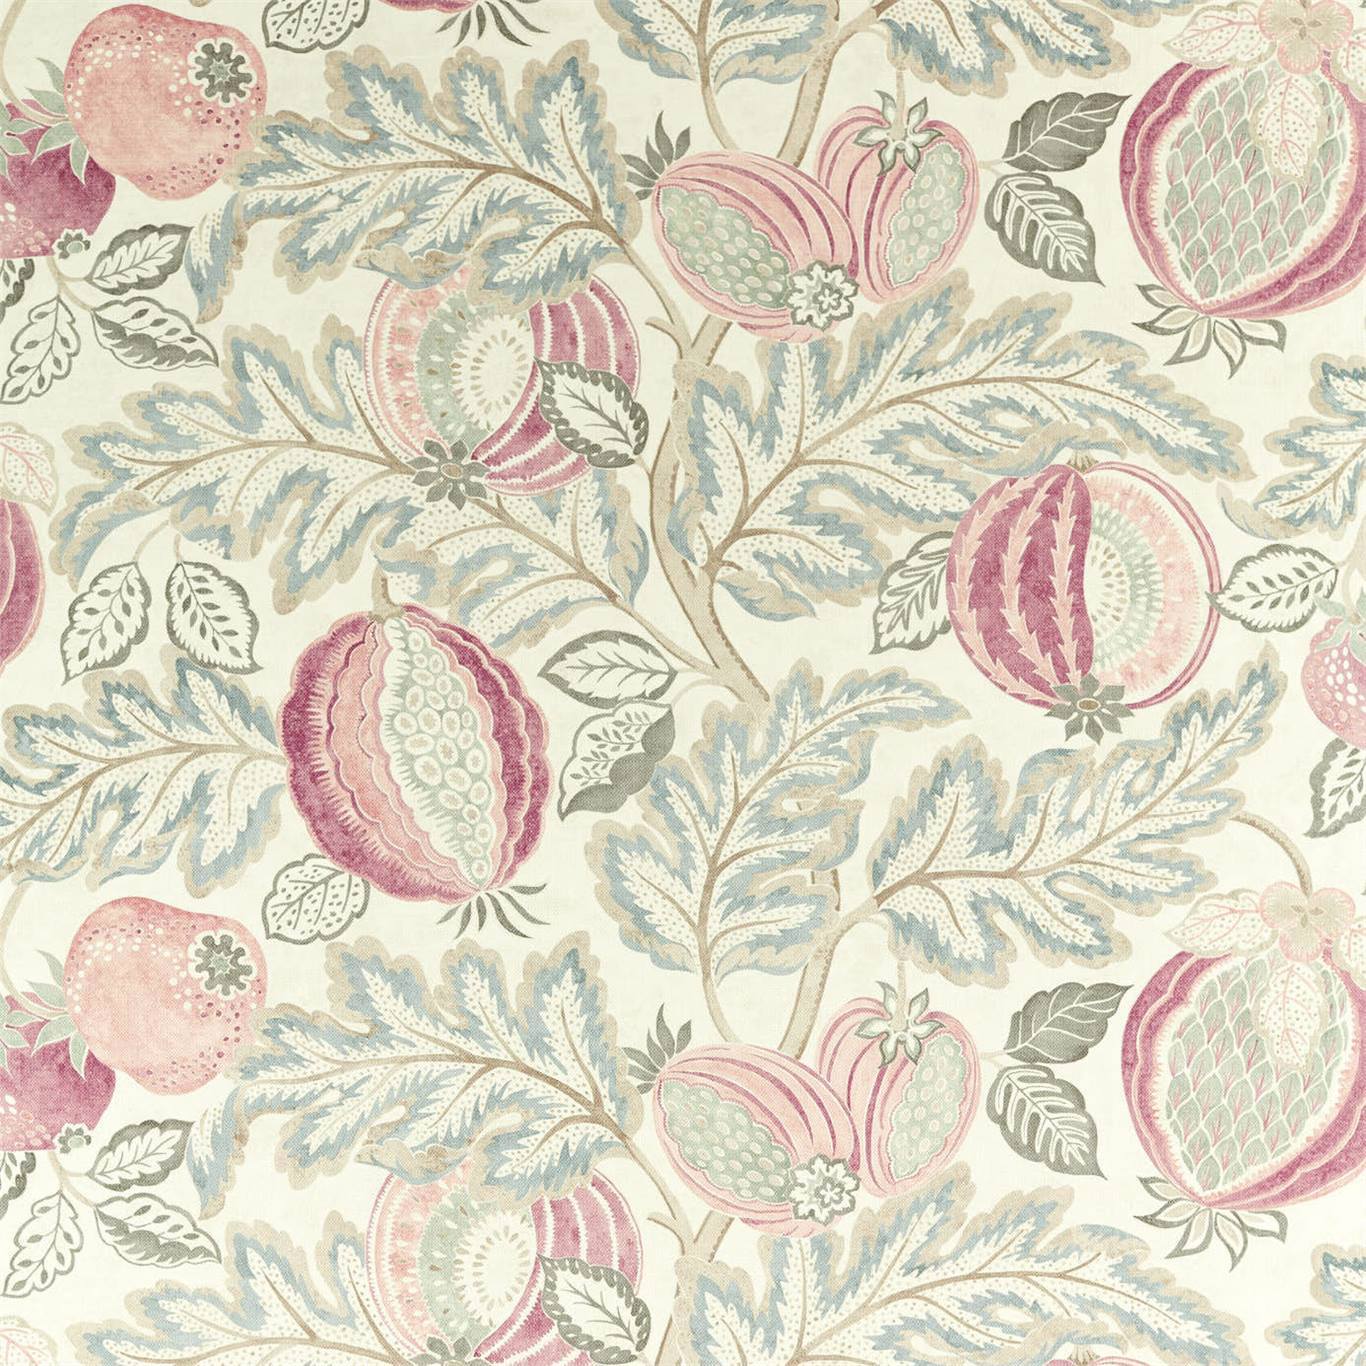 Cantaloupe Fabric by Sanderson - DCEF226638 - Blush/Dove